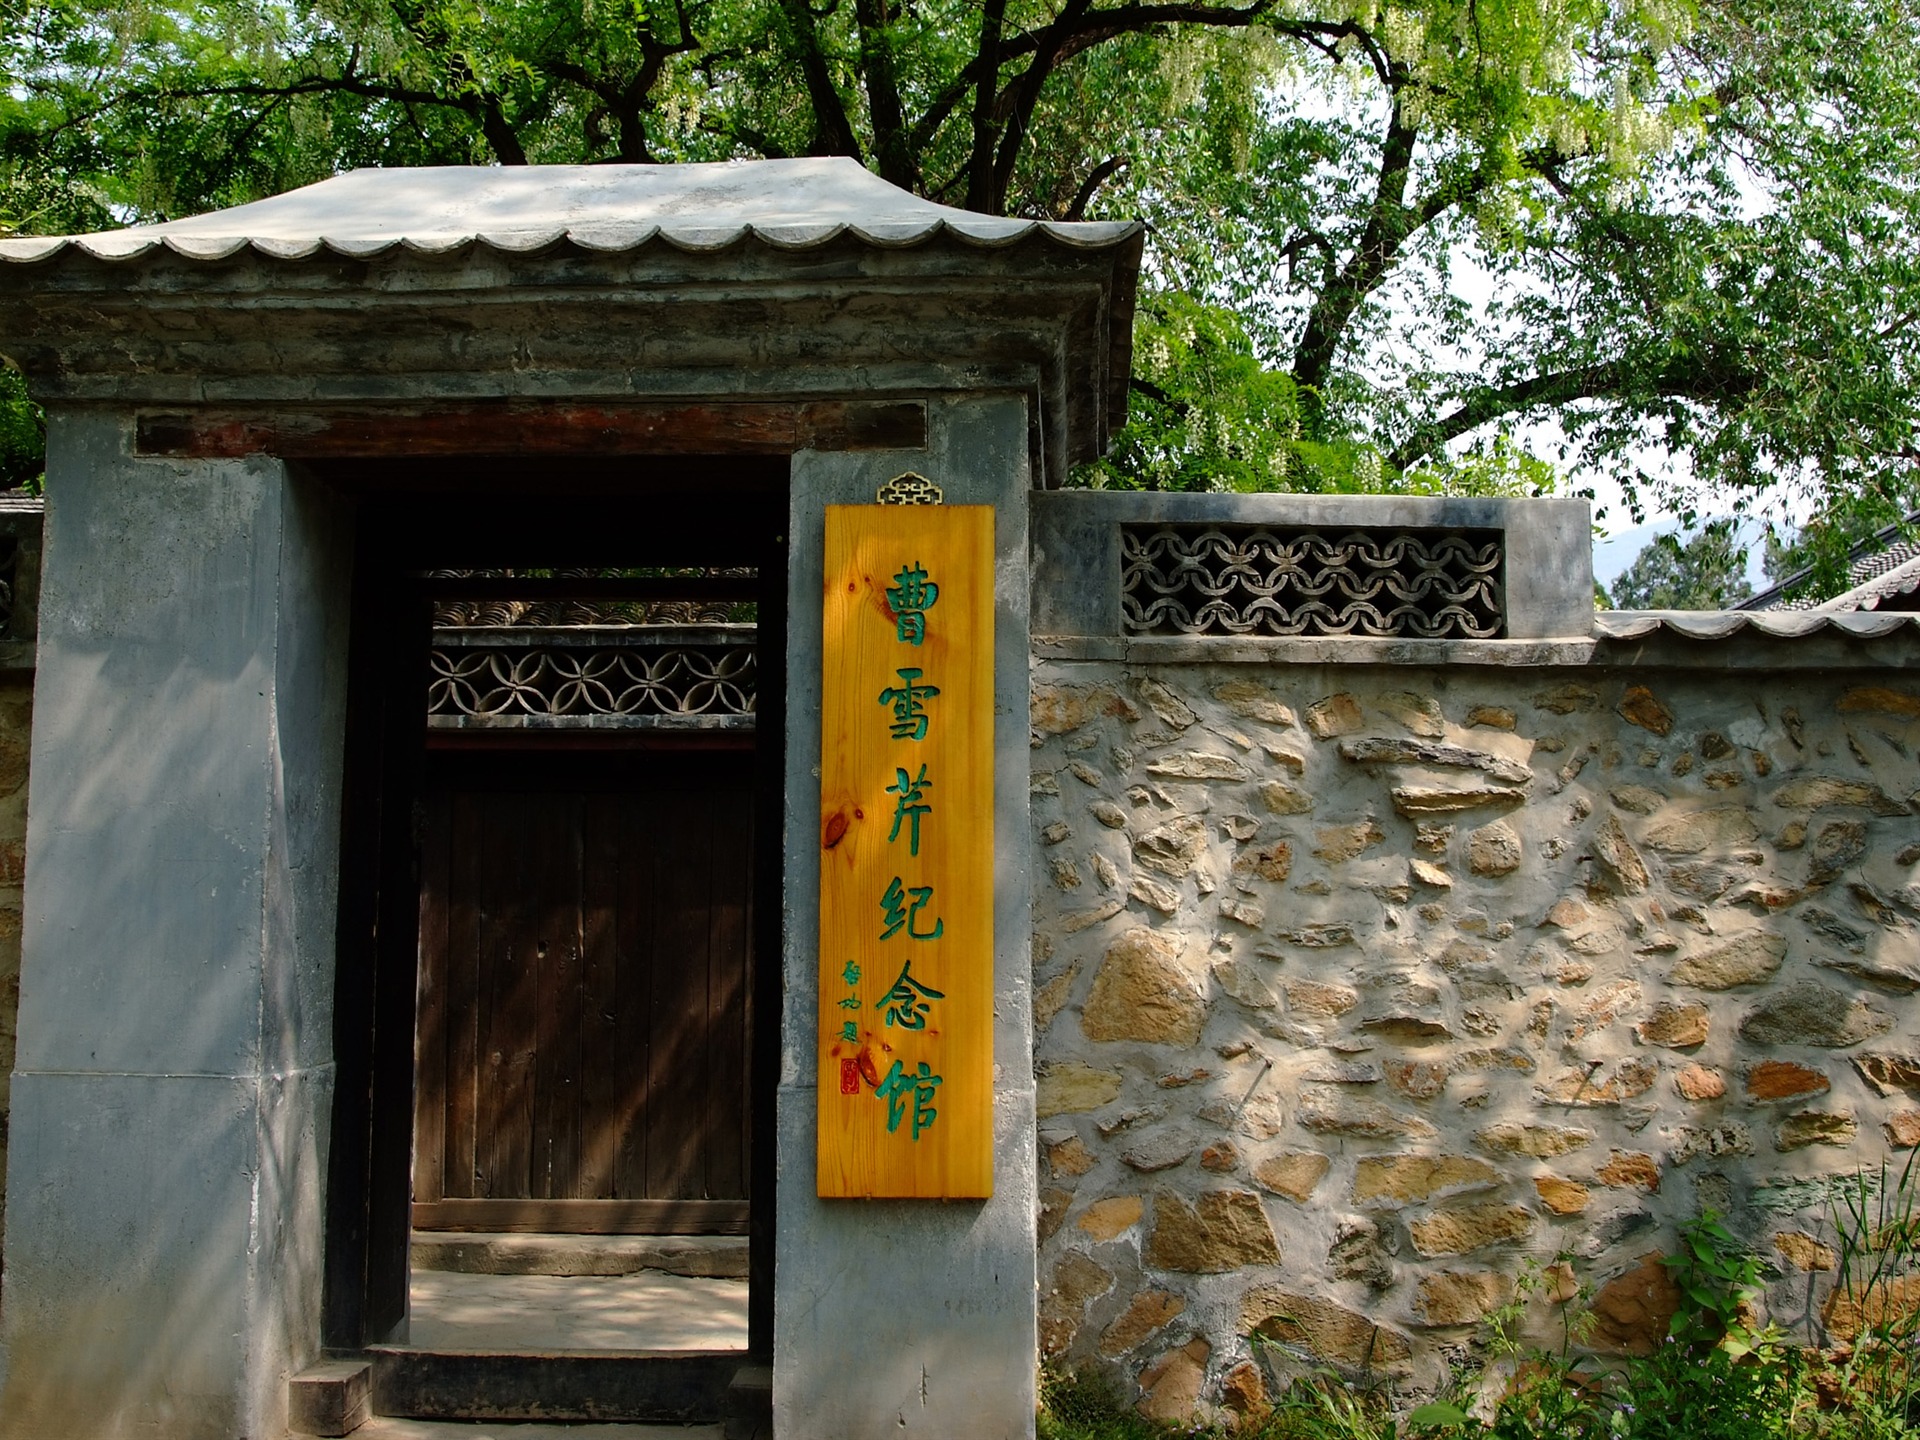 Xiangshan jardín principios del verano (obras barras de refuerzo) #17 - 1920x1440